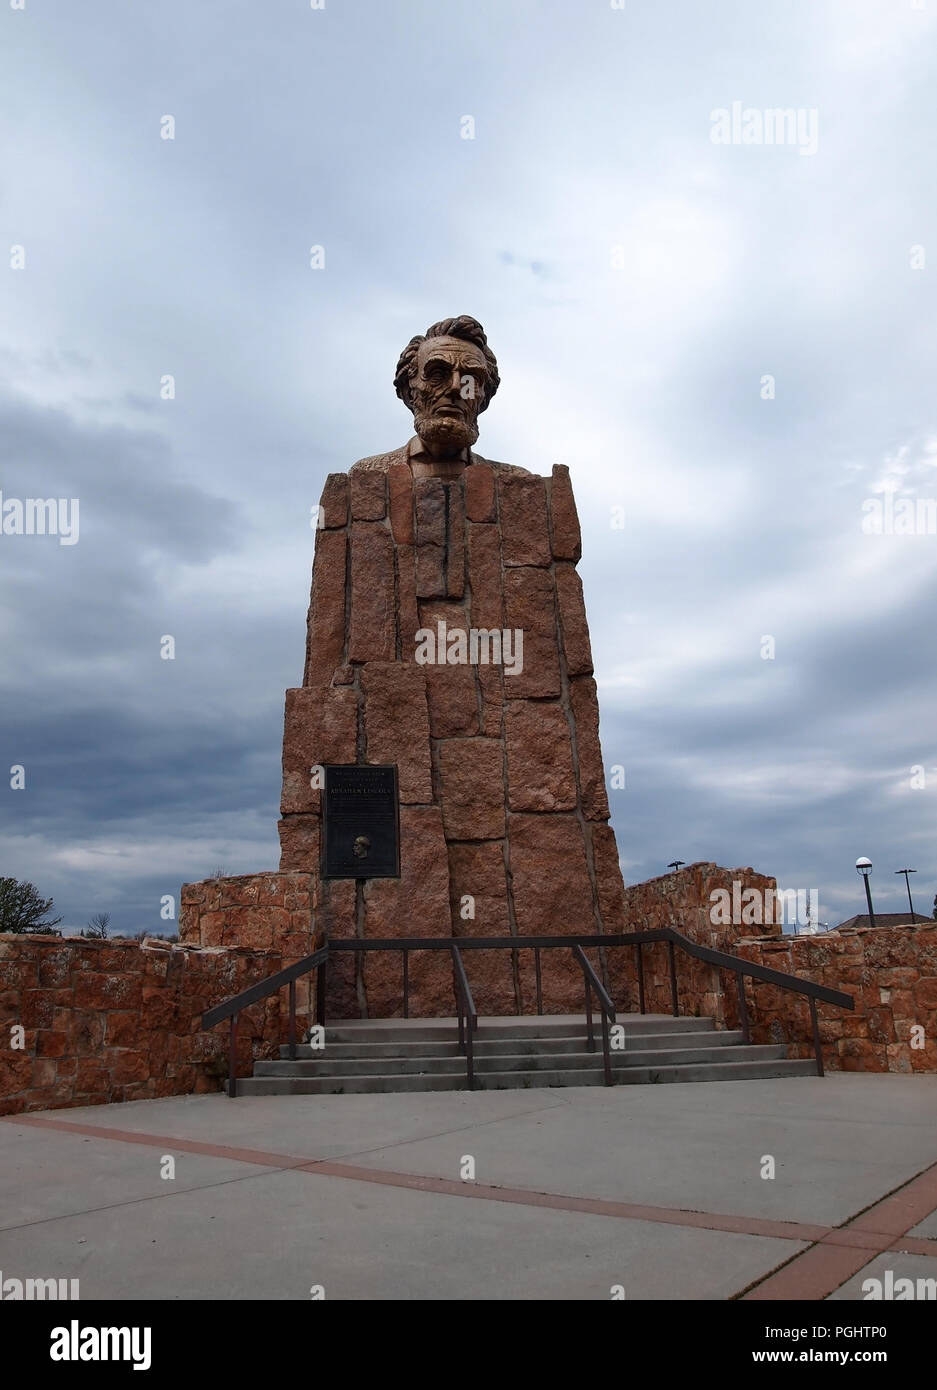 LARAMIE, WYOMING - Juillet 25, 2018 : le buste en bronze de géant du 16e président de l'Amérique, Abraham Lincoln, est assis au sommet d'un piédestal de granit à Laramie Banque D'Images